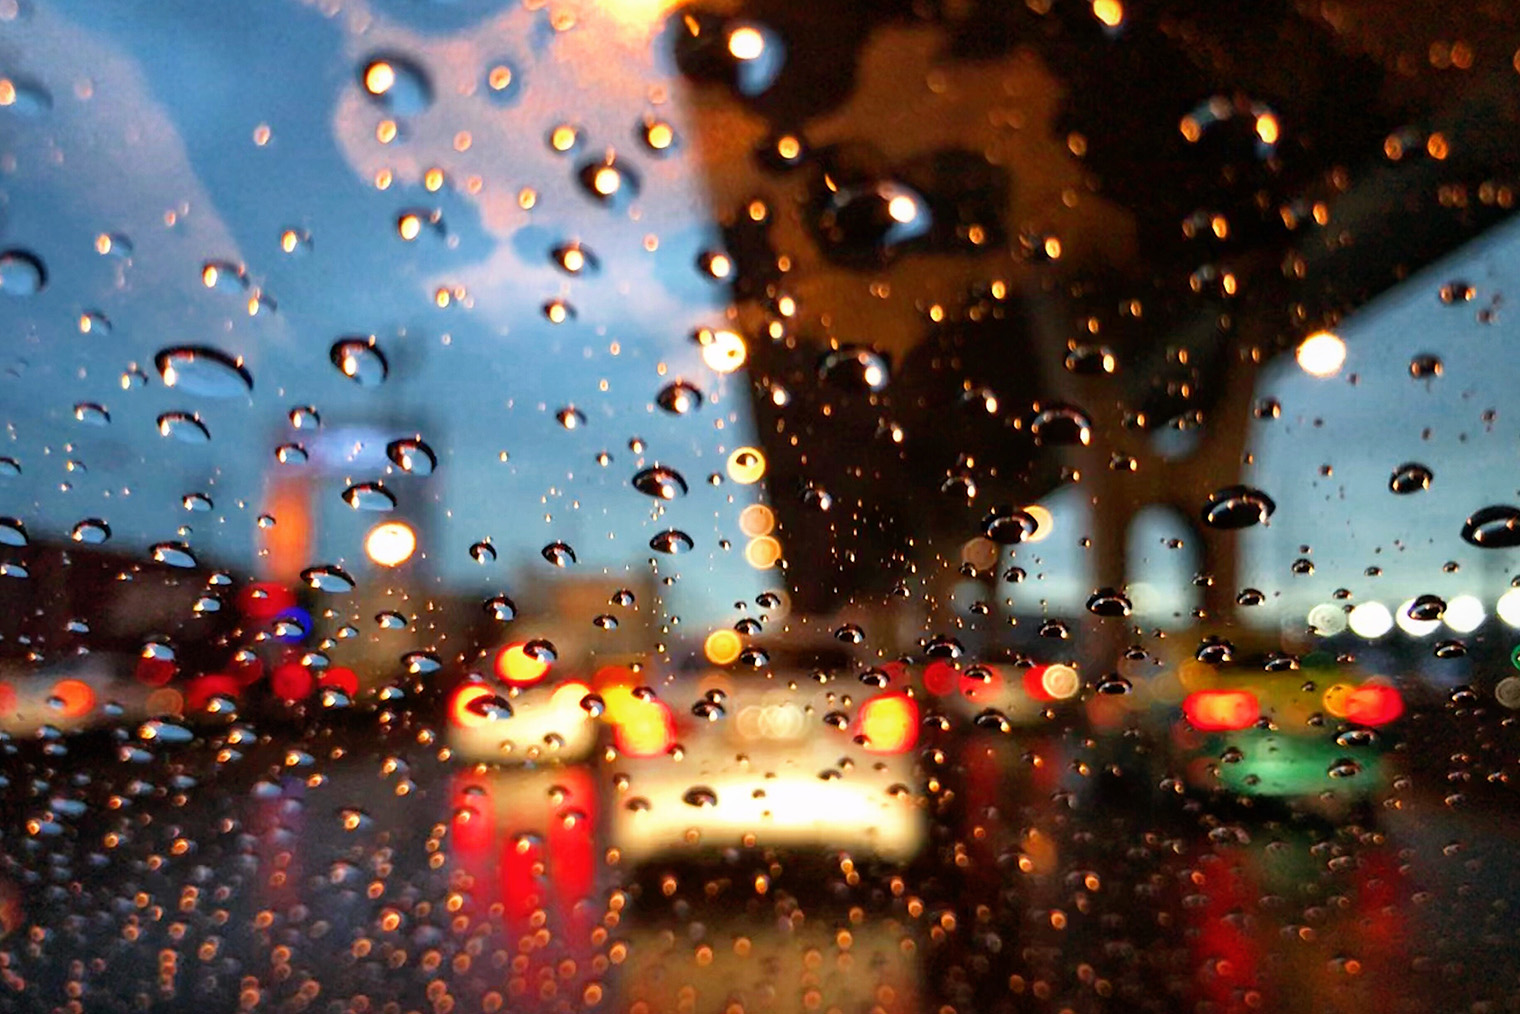 Ночью в дождь разглядеть другие машины можно, только если на них включены световые приборы. С работающими дворниками видно лучше, но в сильный ливень они не всегда справляются. Фотография: jack-sooksan / Shutterstock